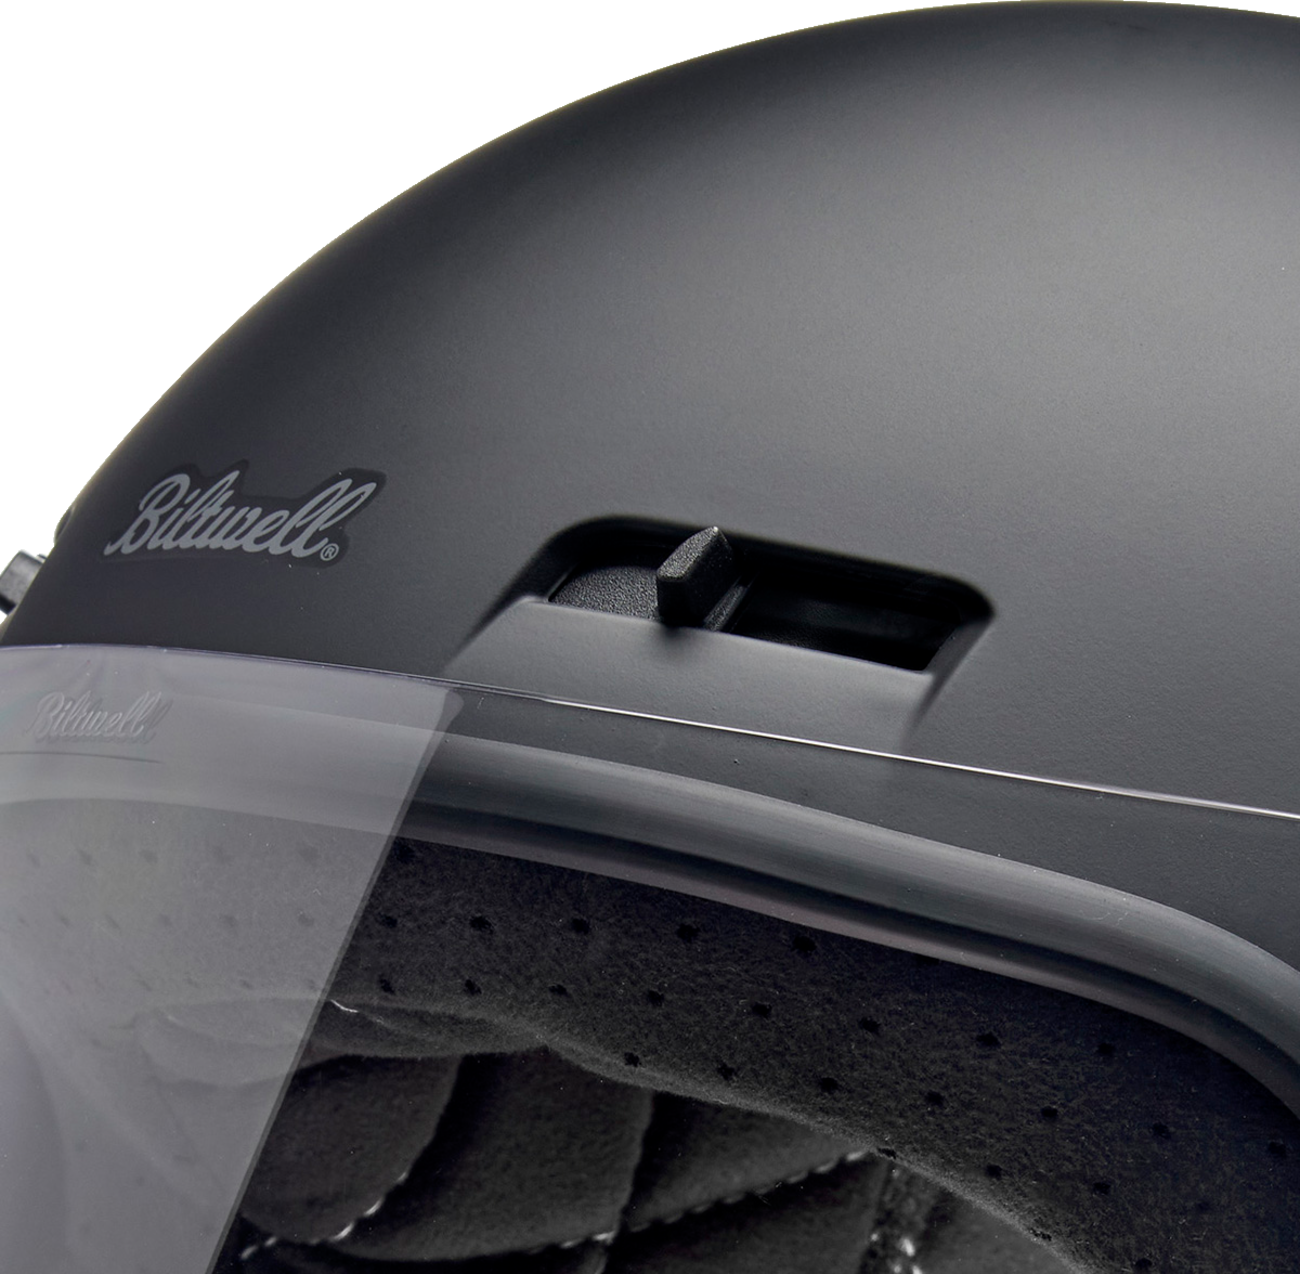 BILTWELL Gringo SV Helmet - Flat Black - Small 1006-201-502